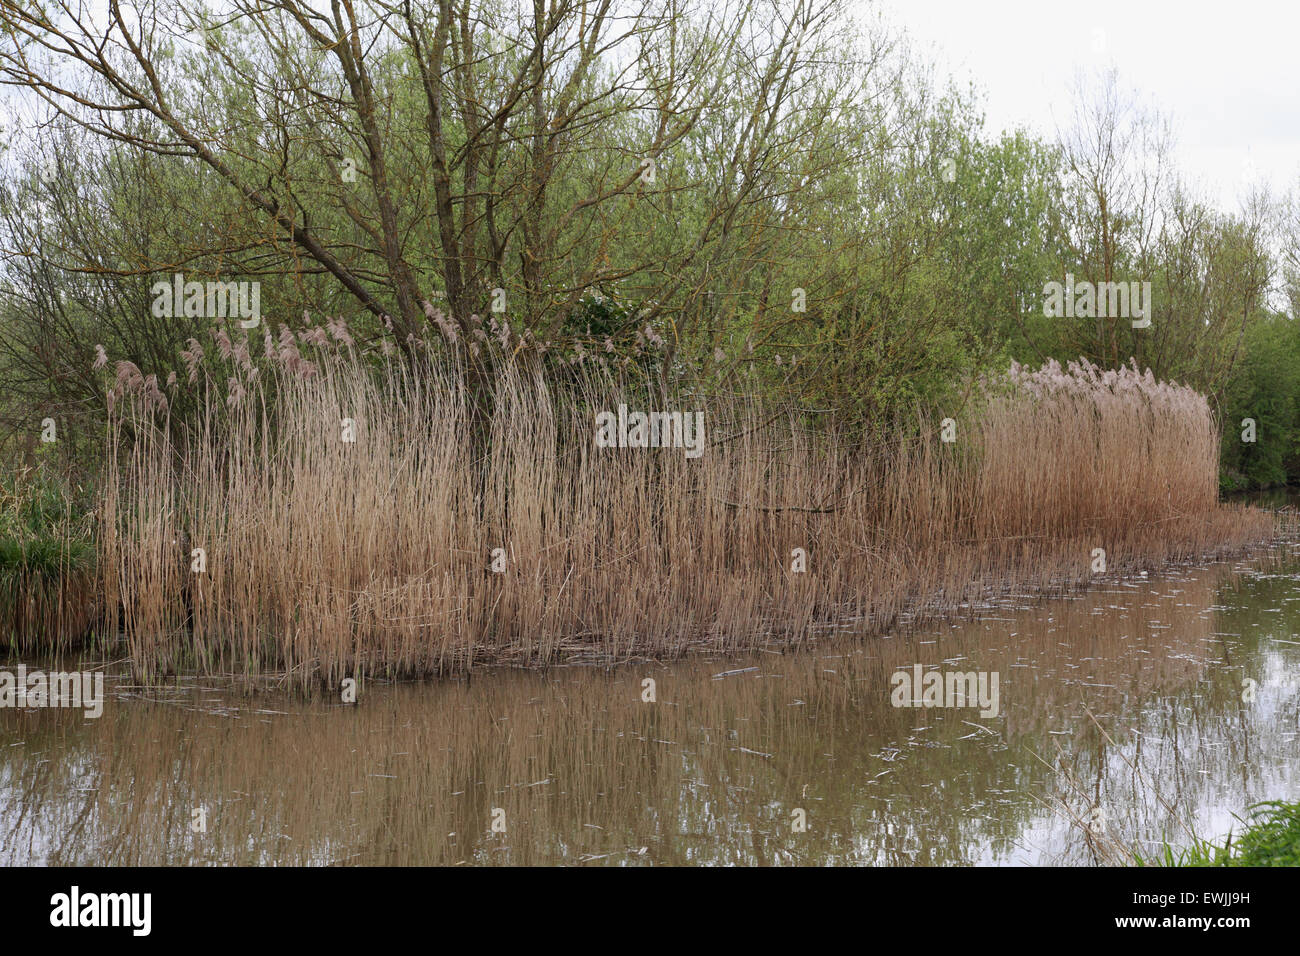 Une roselière sur le canal d'Oxford à Aynho. Trop de roselières ont un effet négatif sur l'utilisation du canal et son écologie Banque D'Images